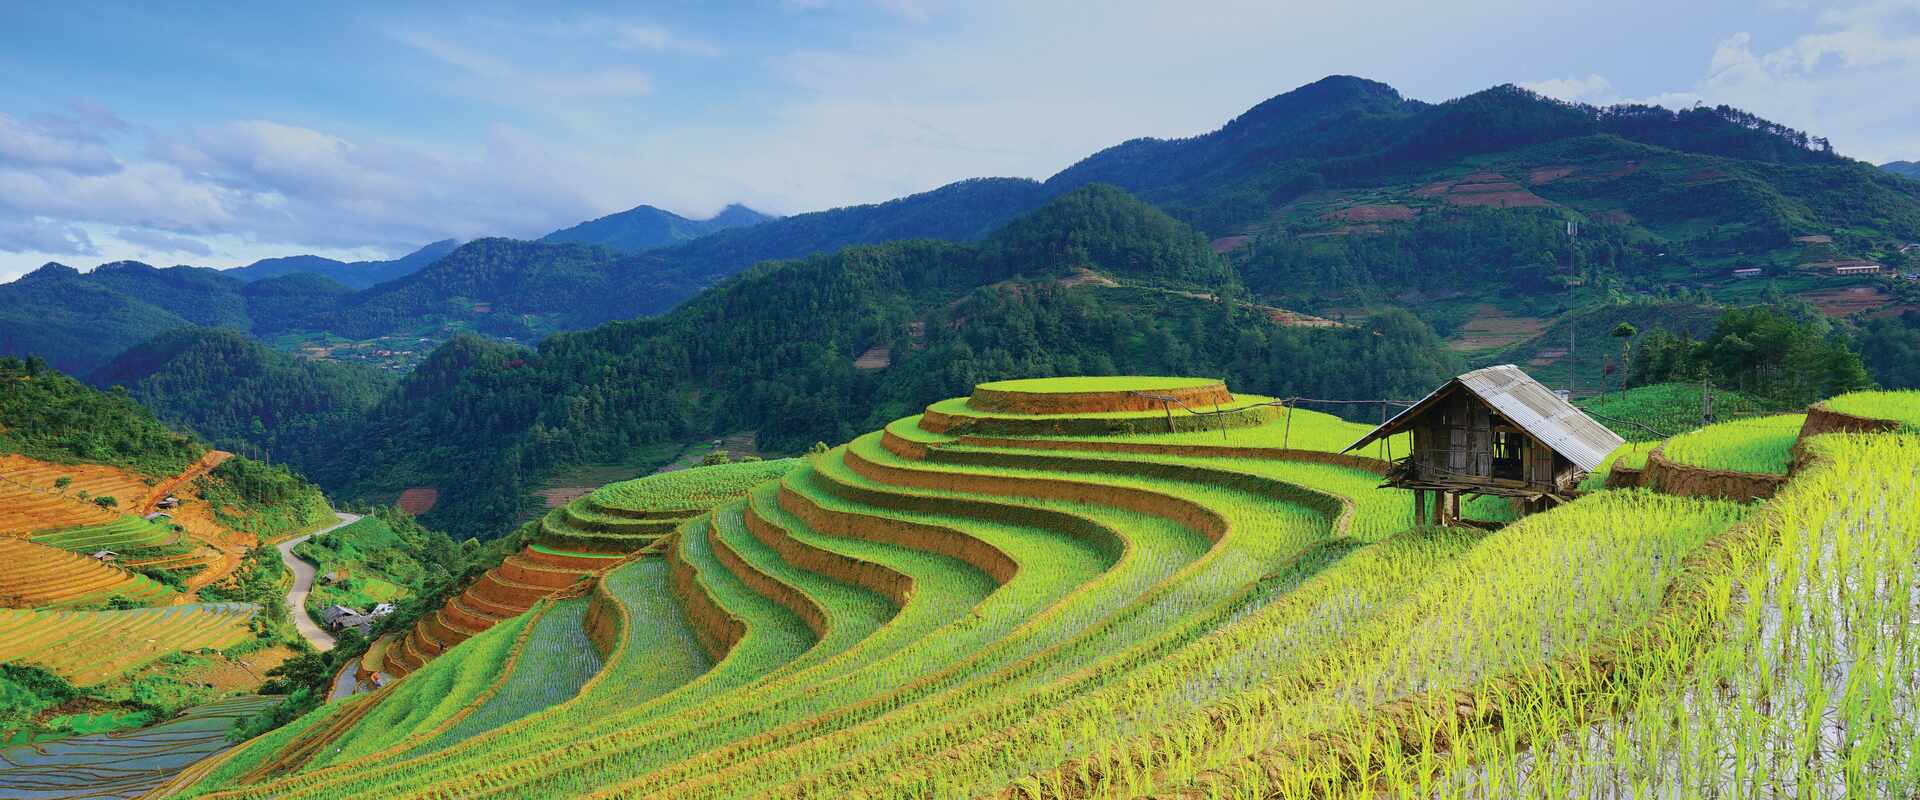 Rice fields terraced in Sapa, Vietnam